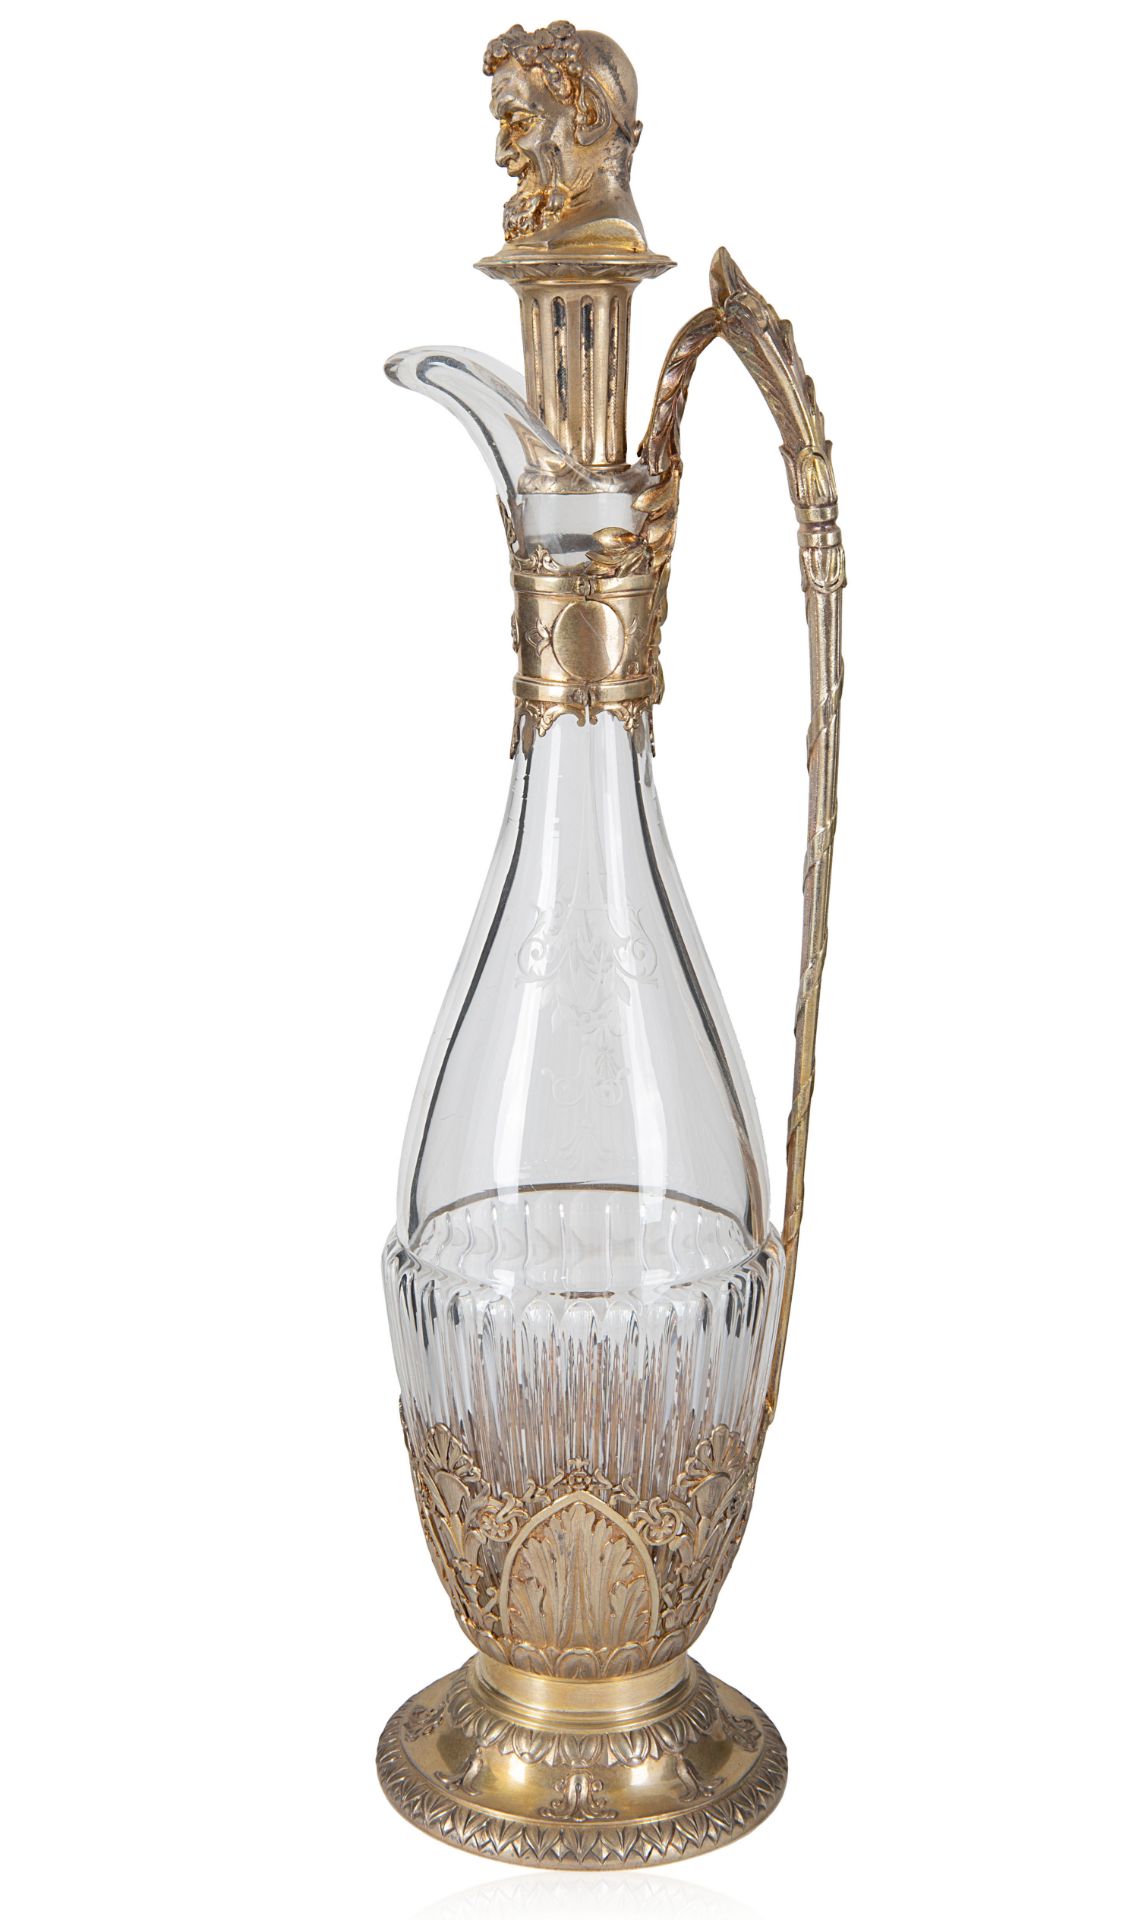 AN AUSTRIAN SILVER-MOUNTED CUT GLASS DECANTER, MAKER JOSEF CARL KLINKOSCH, VIENNA, 1872-1888